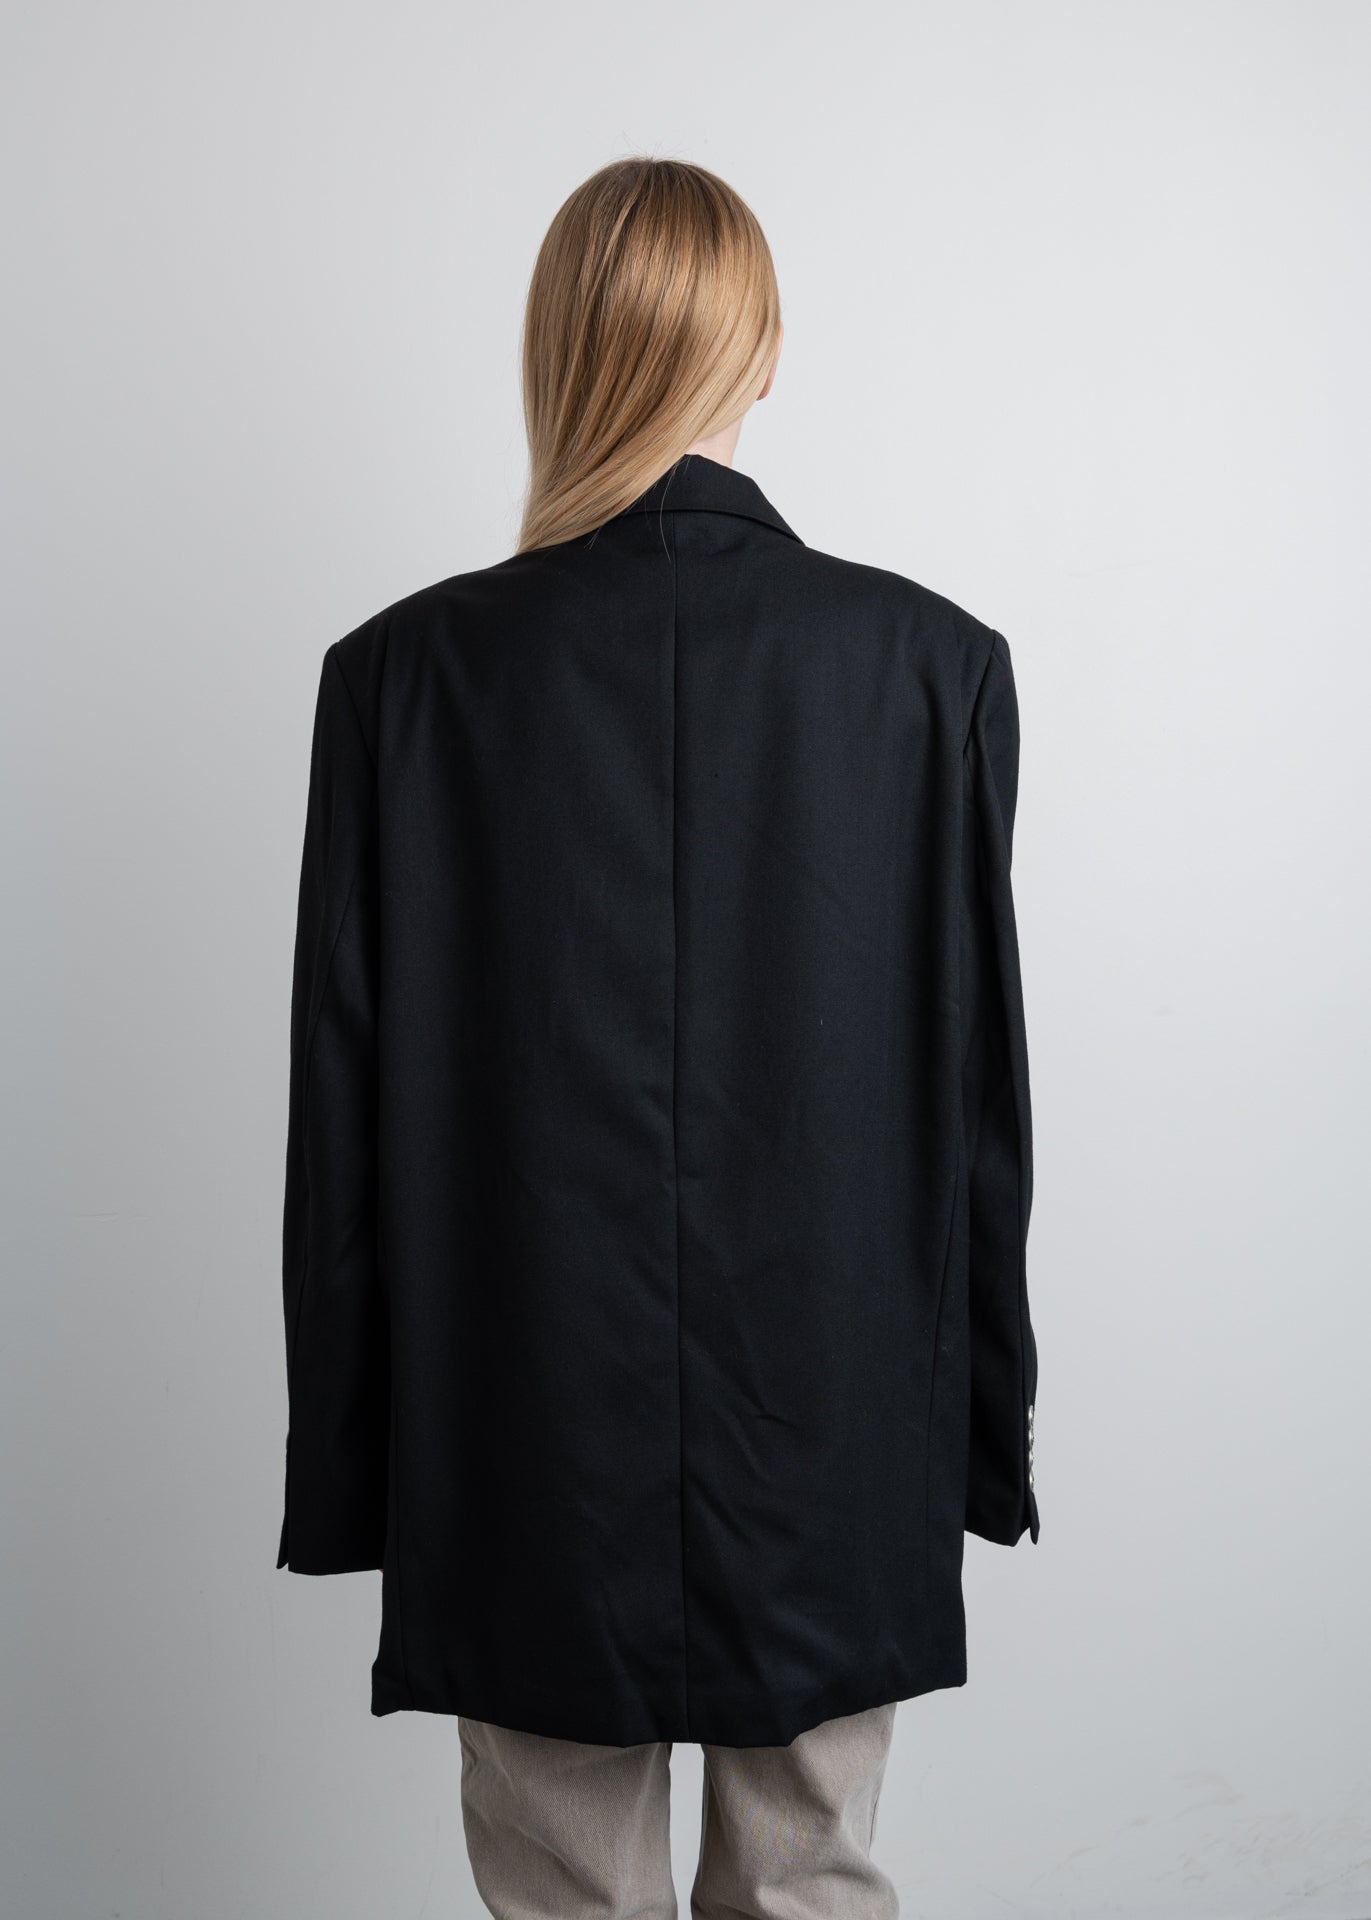 Vintage Black Oversized Straight Cut Jacket